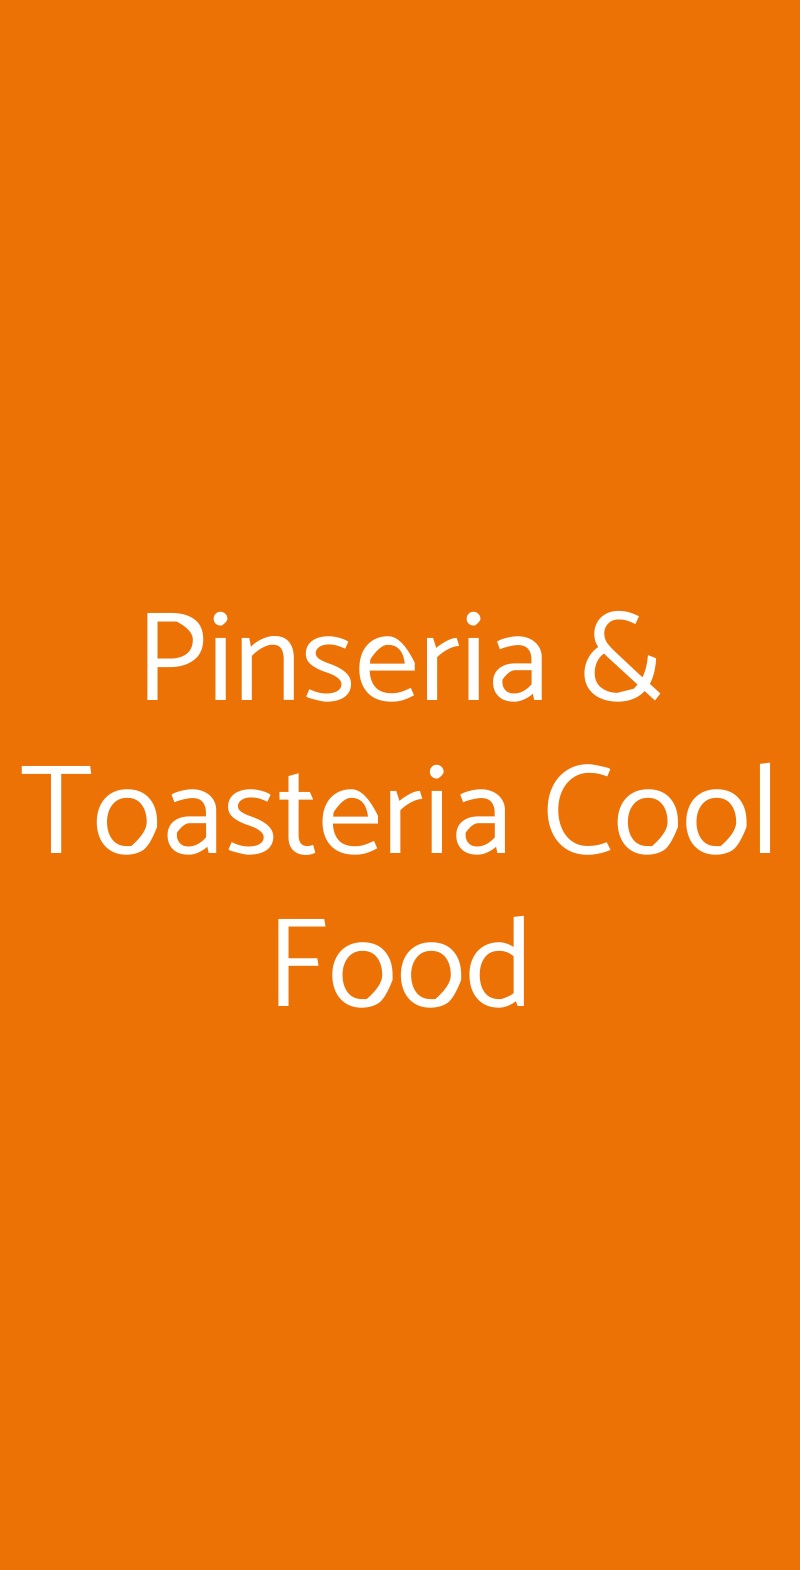 Pinseria & Toasteria Cool Food Catania menù 1 pagina